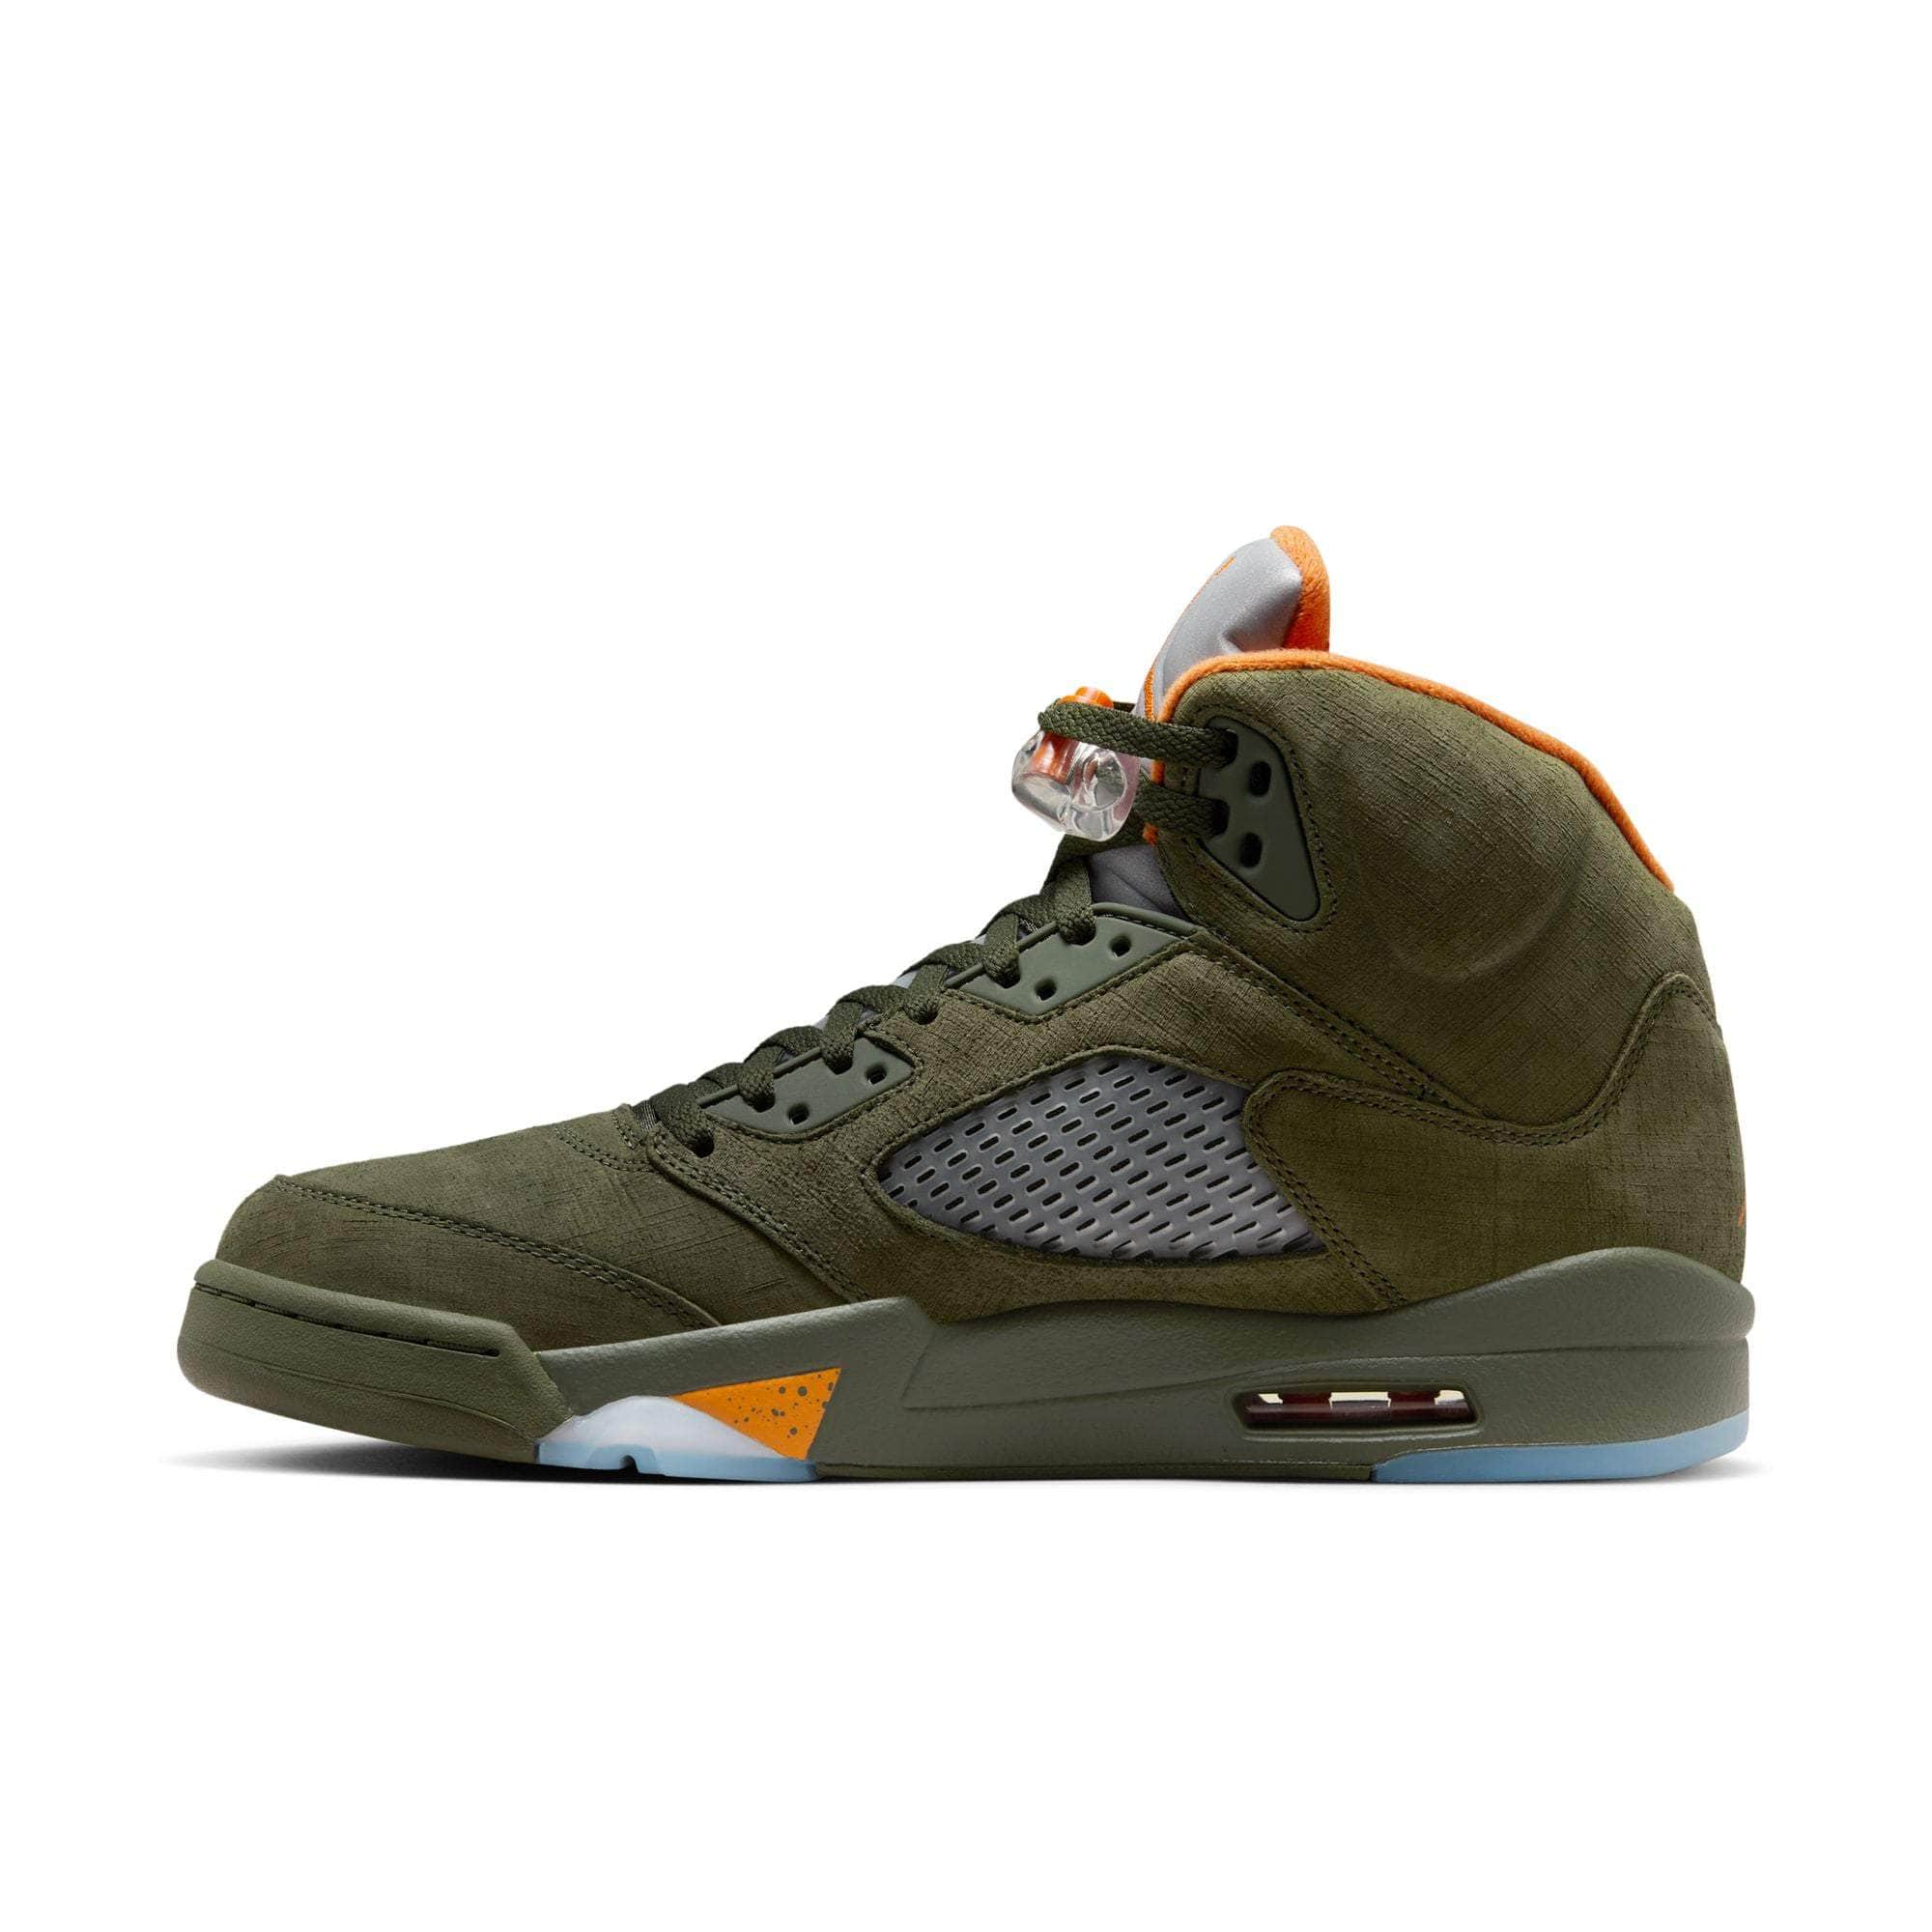 Air Jordan Footwear Air Jordan 5 Retro “Olive“ - Men's